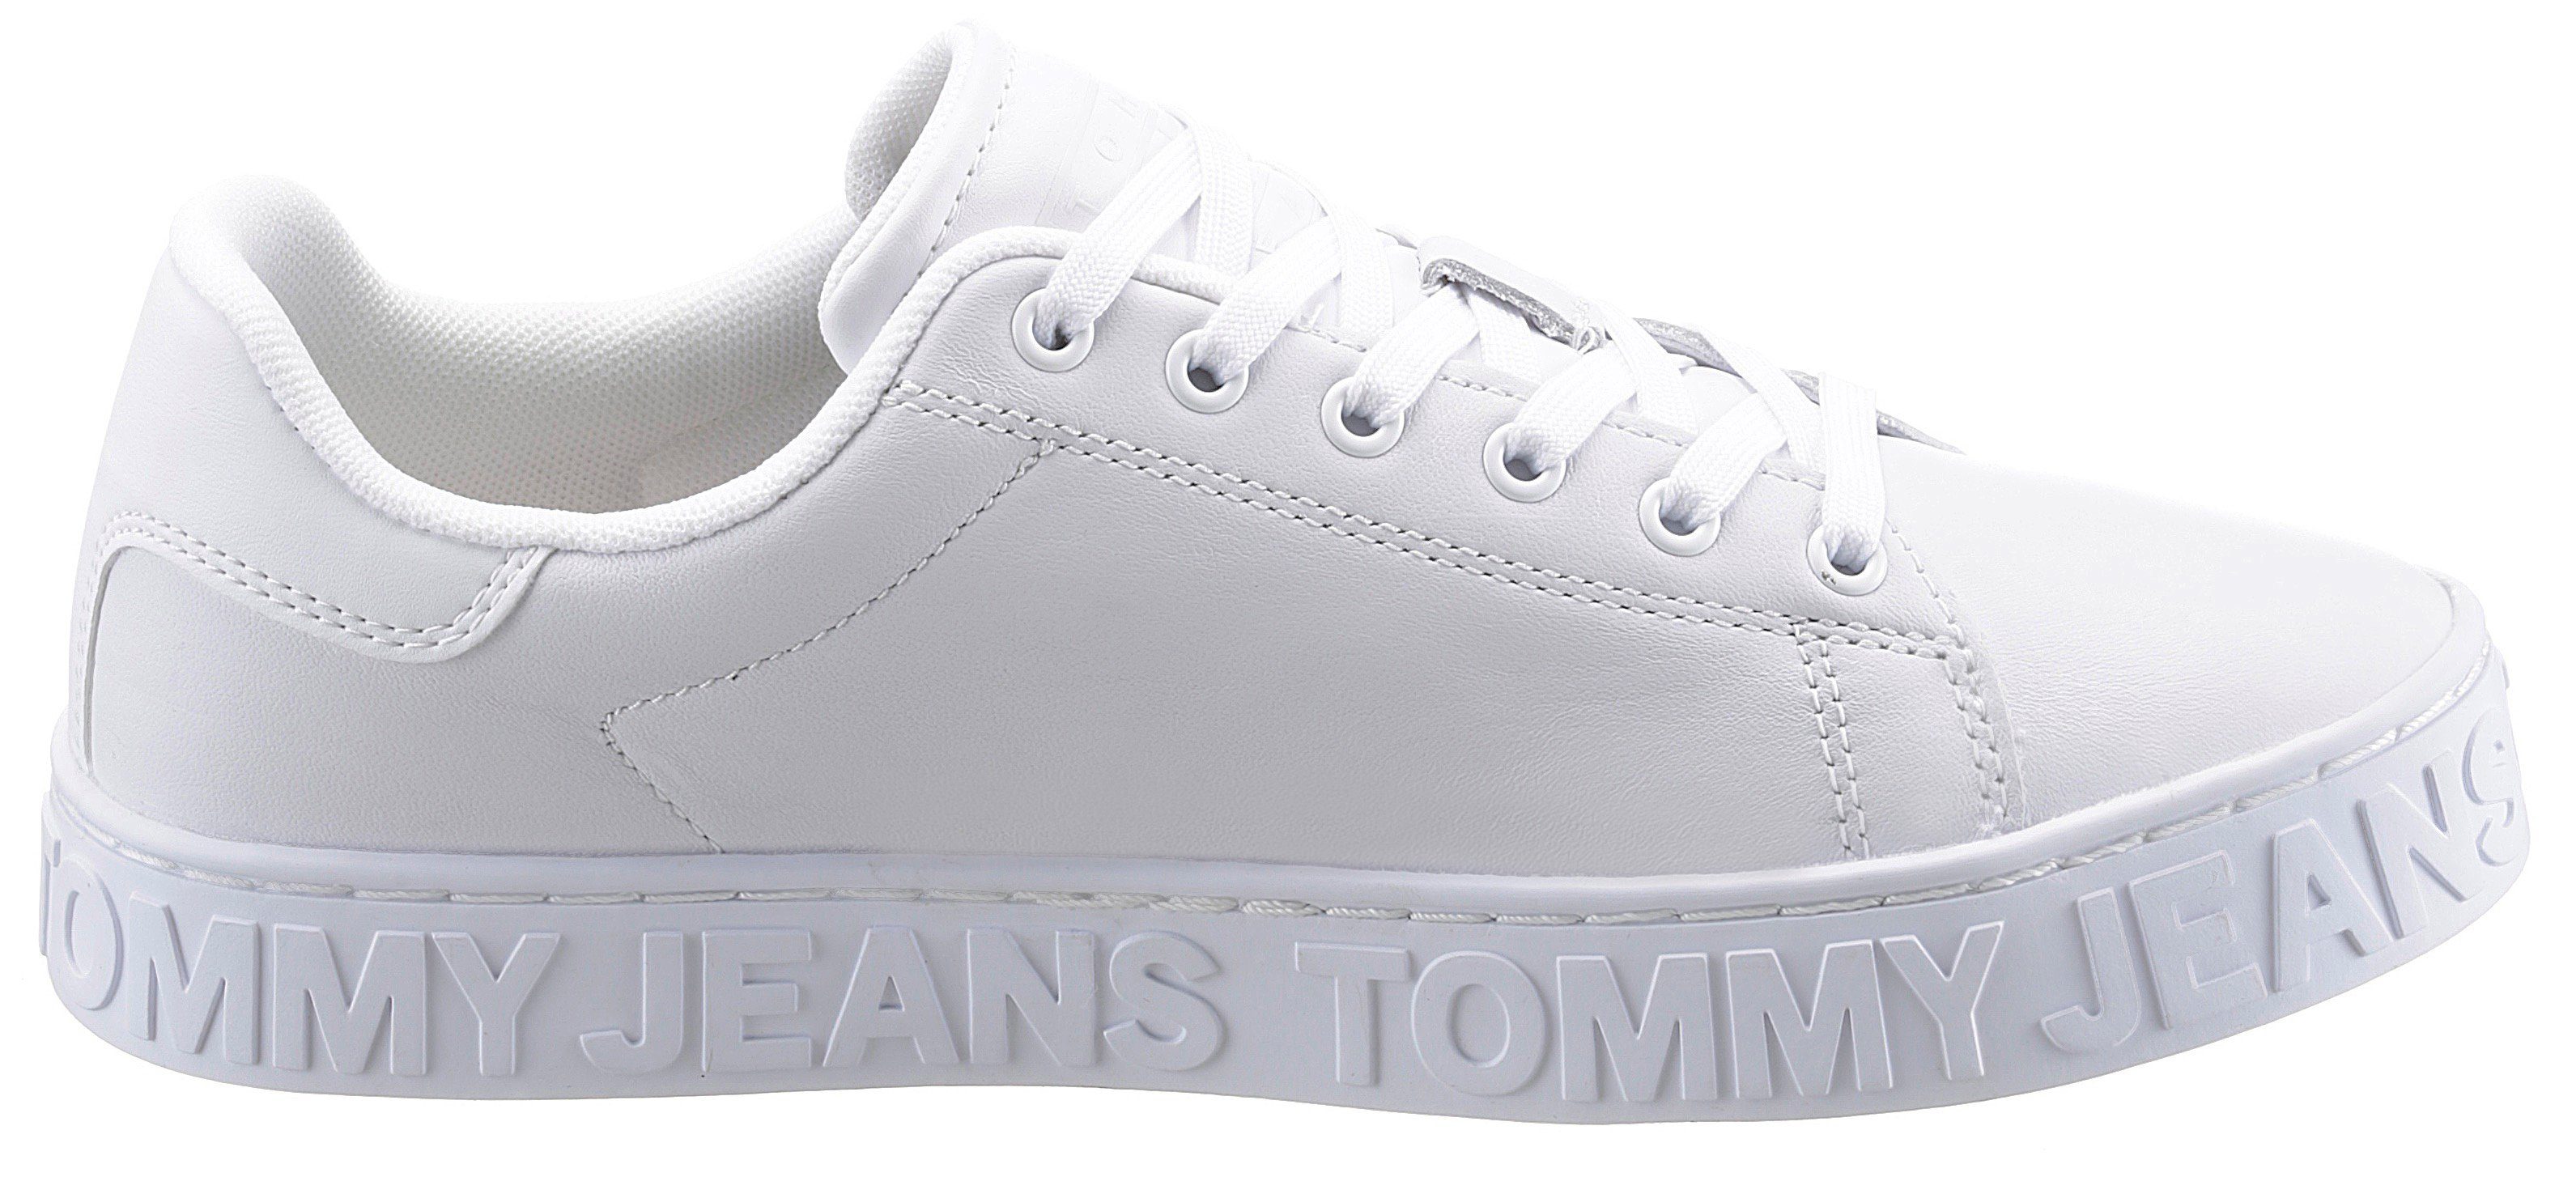 ESS JEANS Sohle in TOMMY Tommy mit Jeans Sneaker Logo SNEAKER weiß der COOL